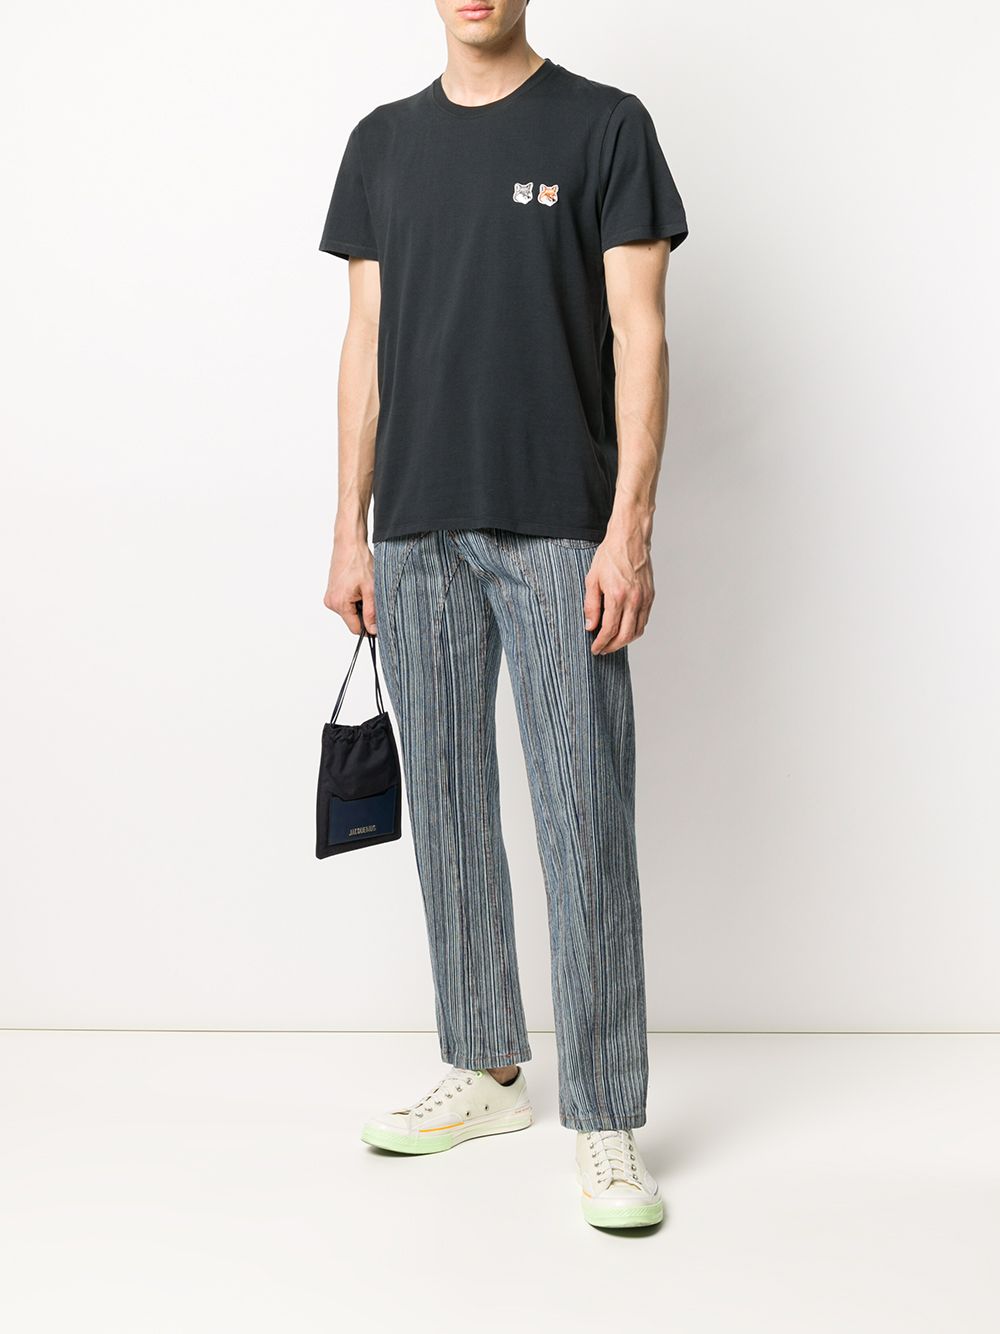 Grey appliqued T-shirt - men - MAISON KITSUNÉ - divincenzoboutique.com